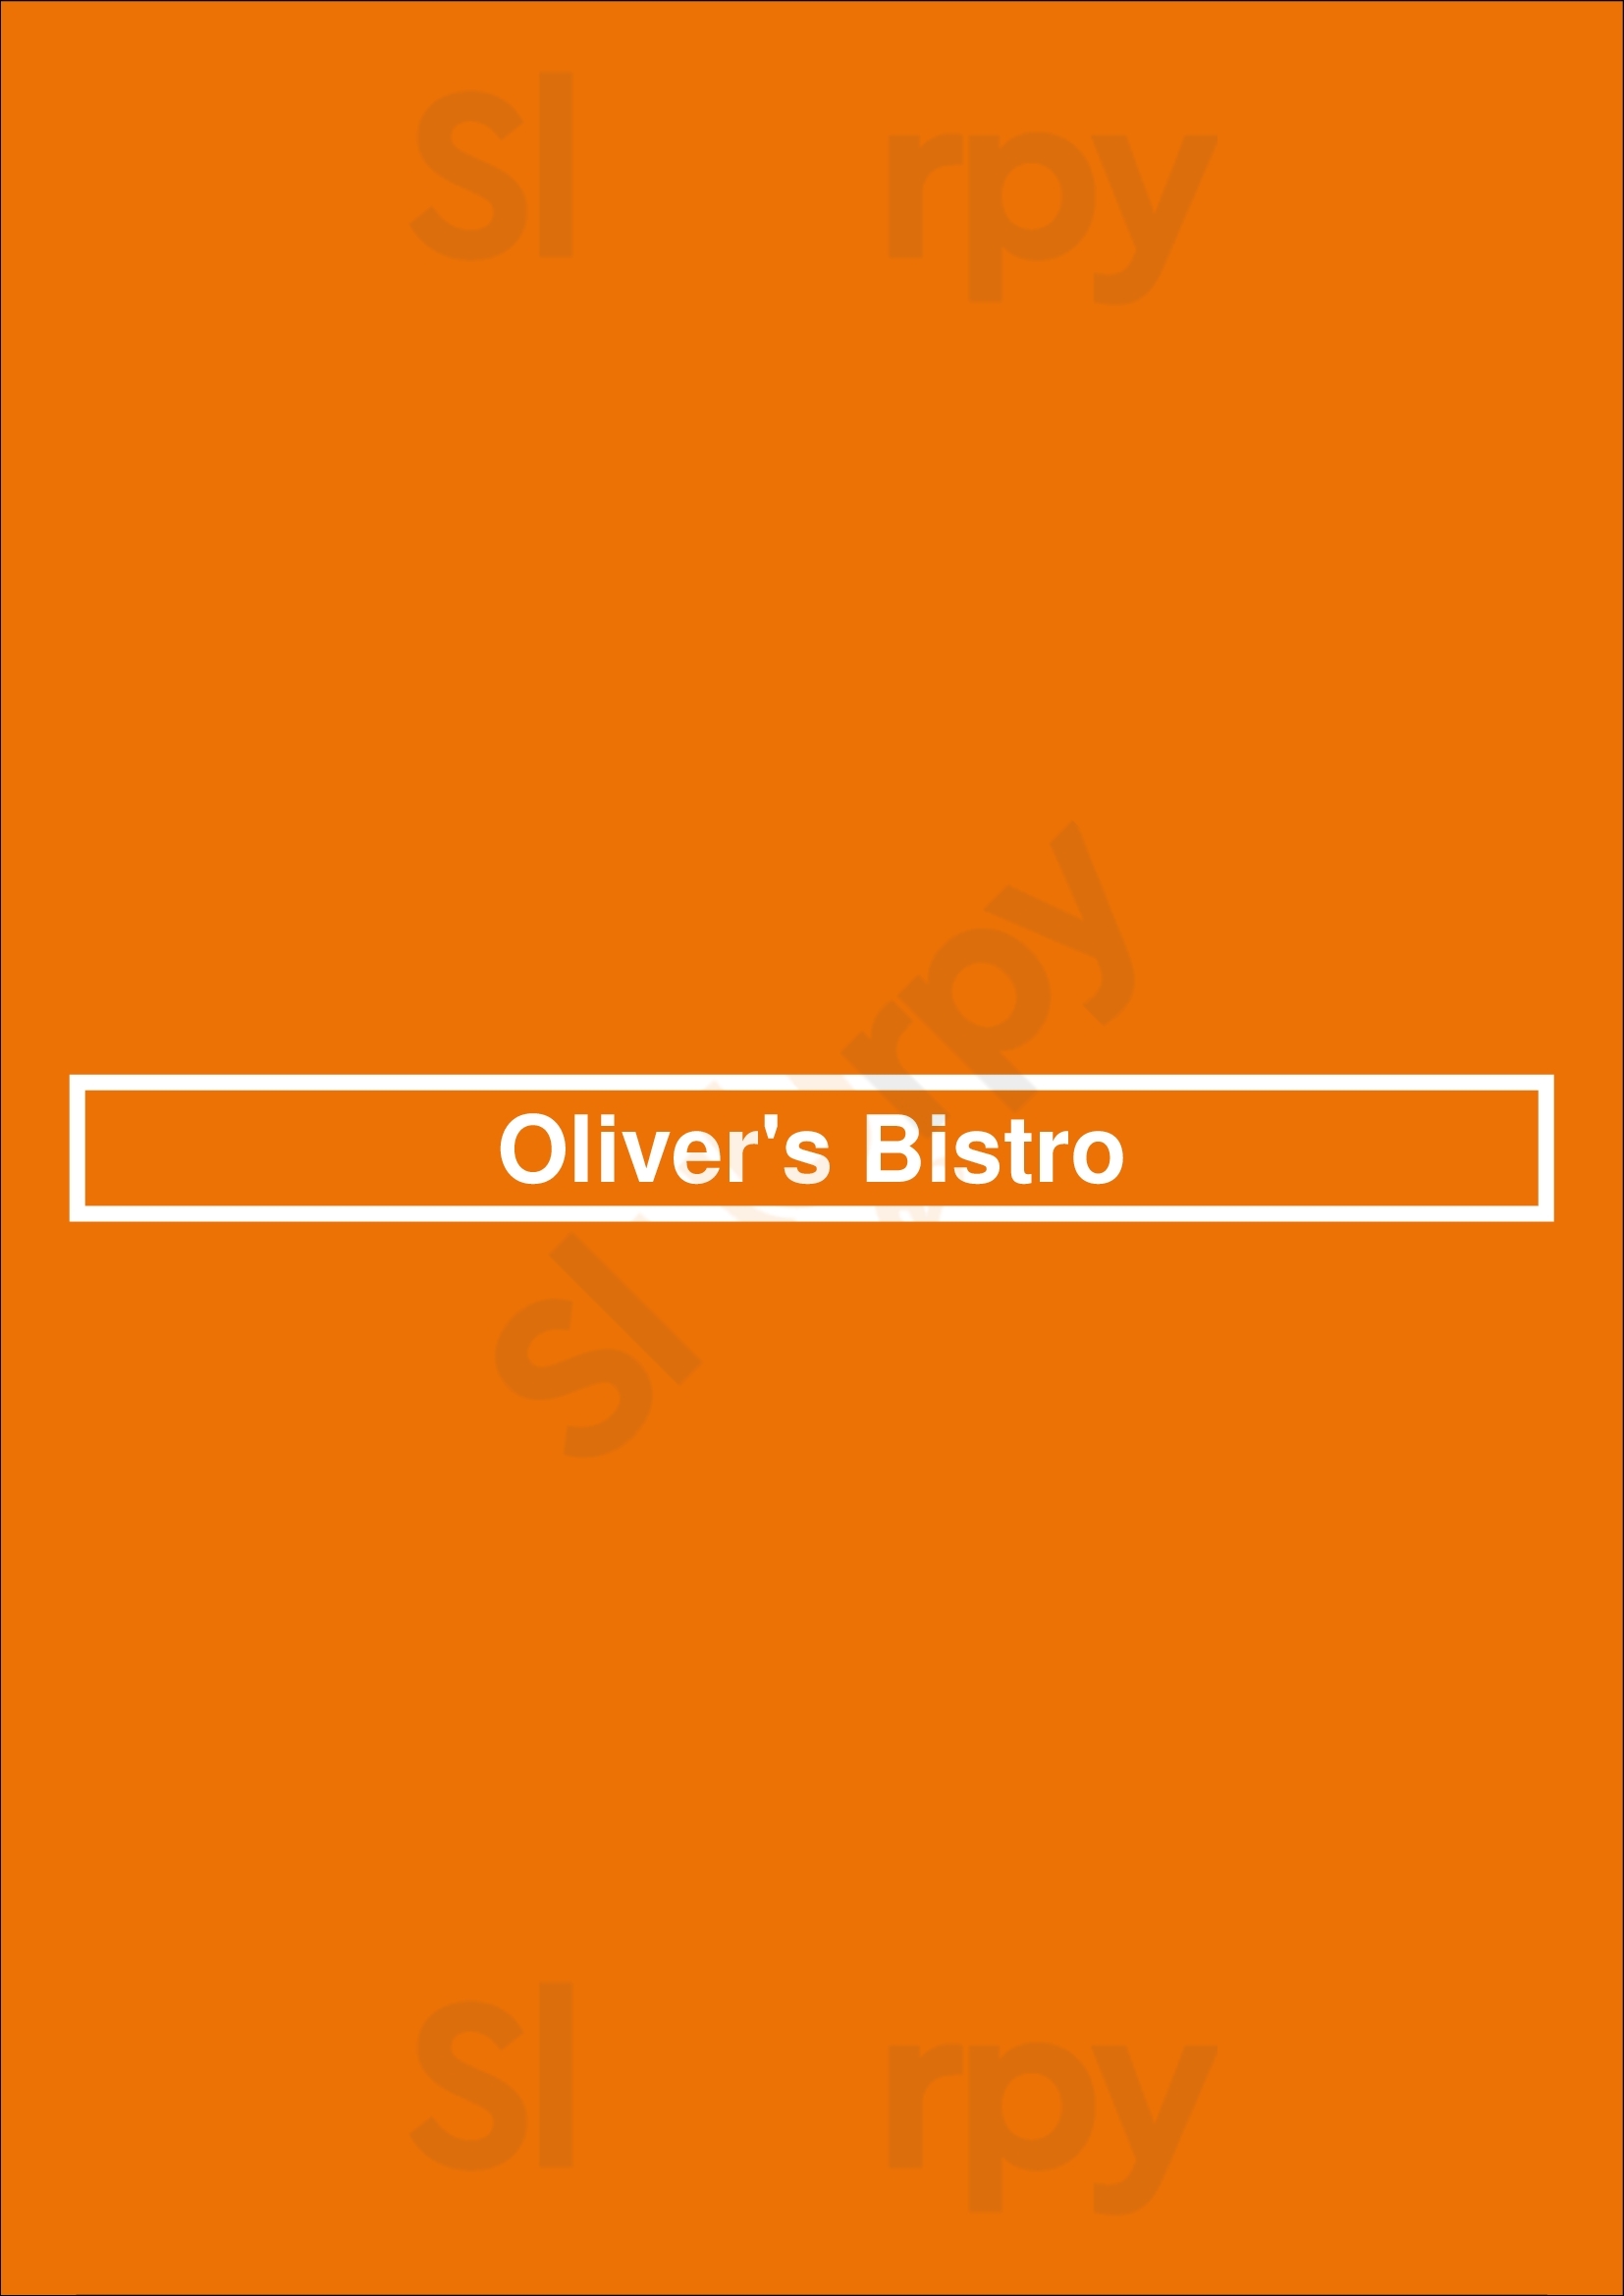 Oliver's Bistro Miami Beach Menu - 1